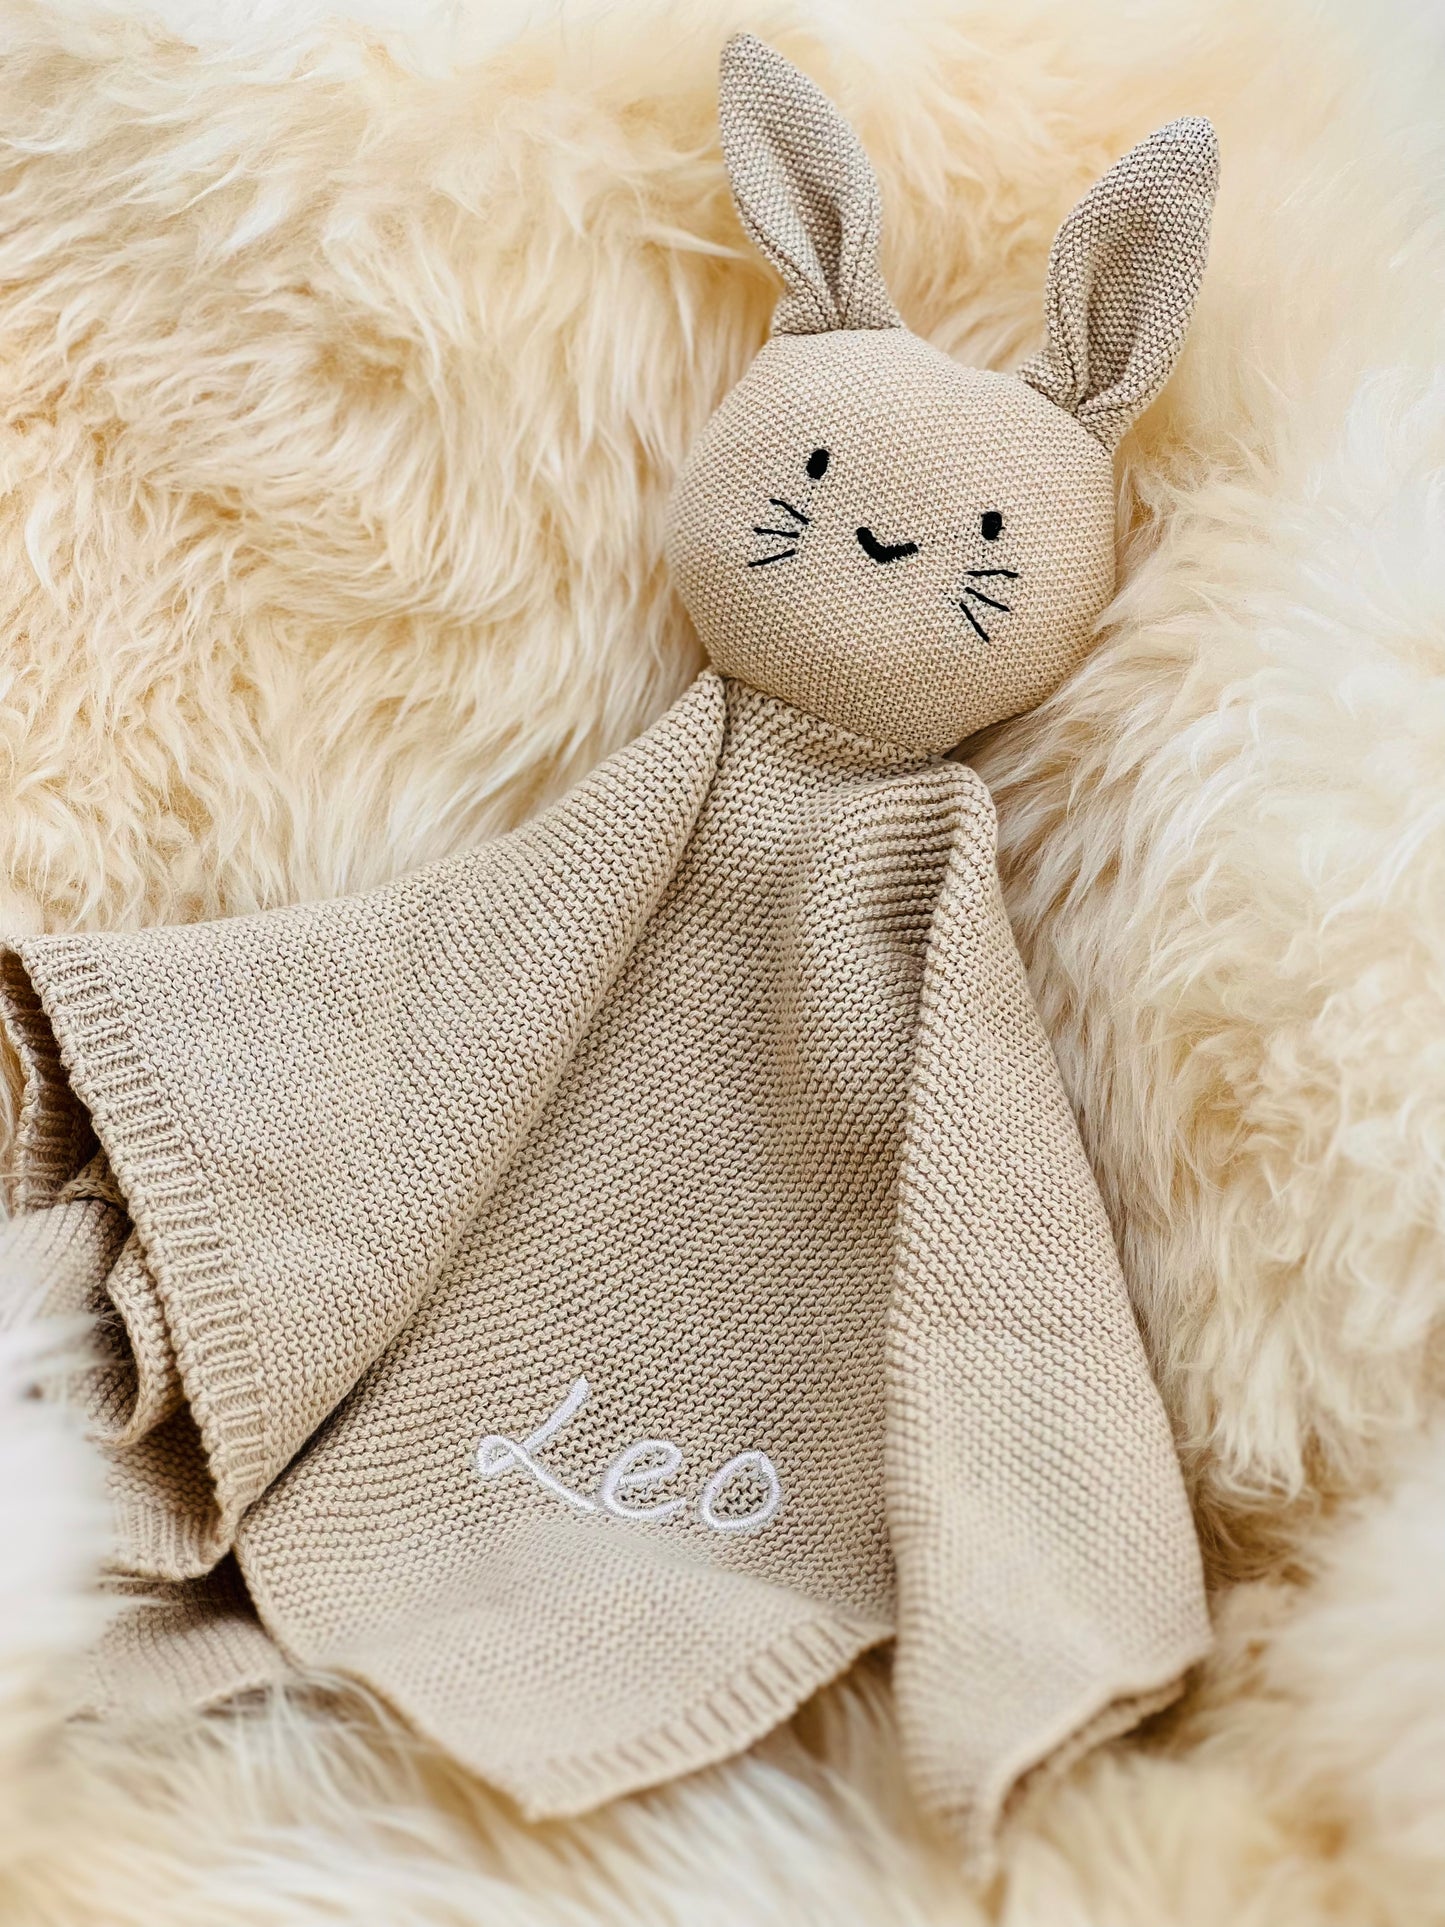 Crocheted beige cuddly bunny